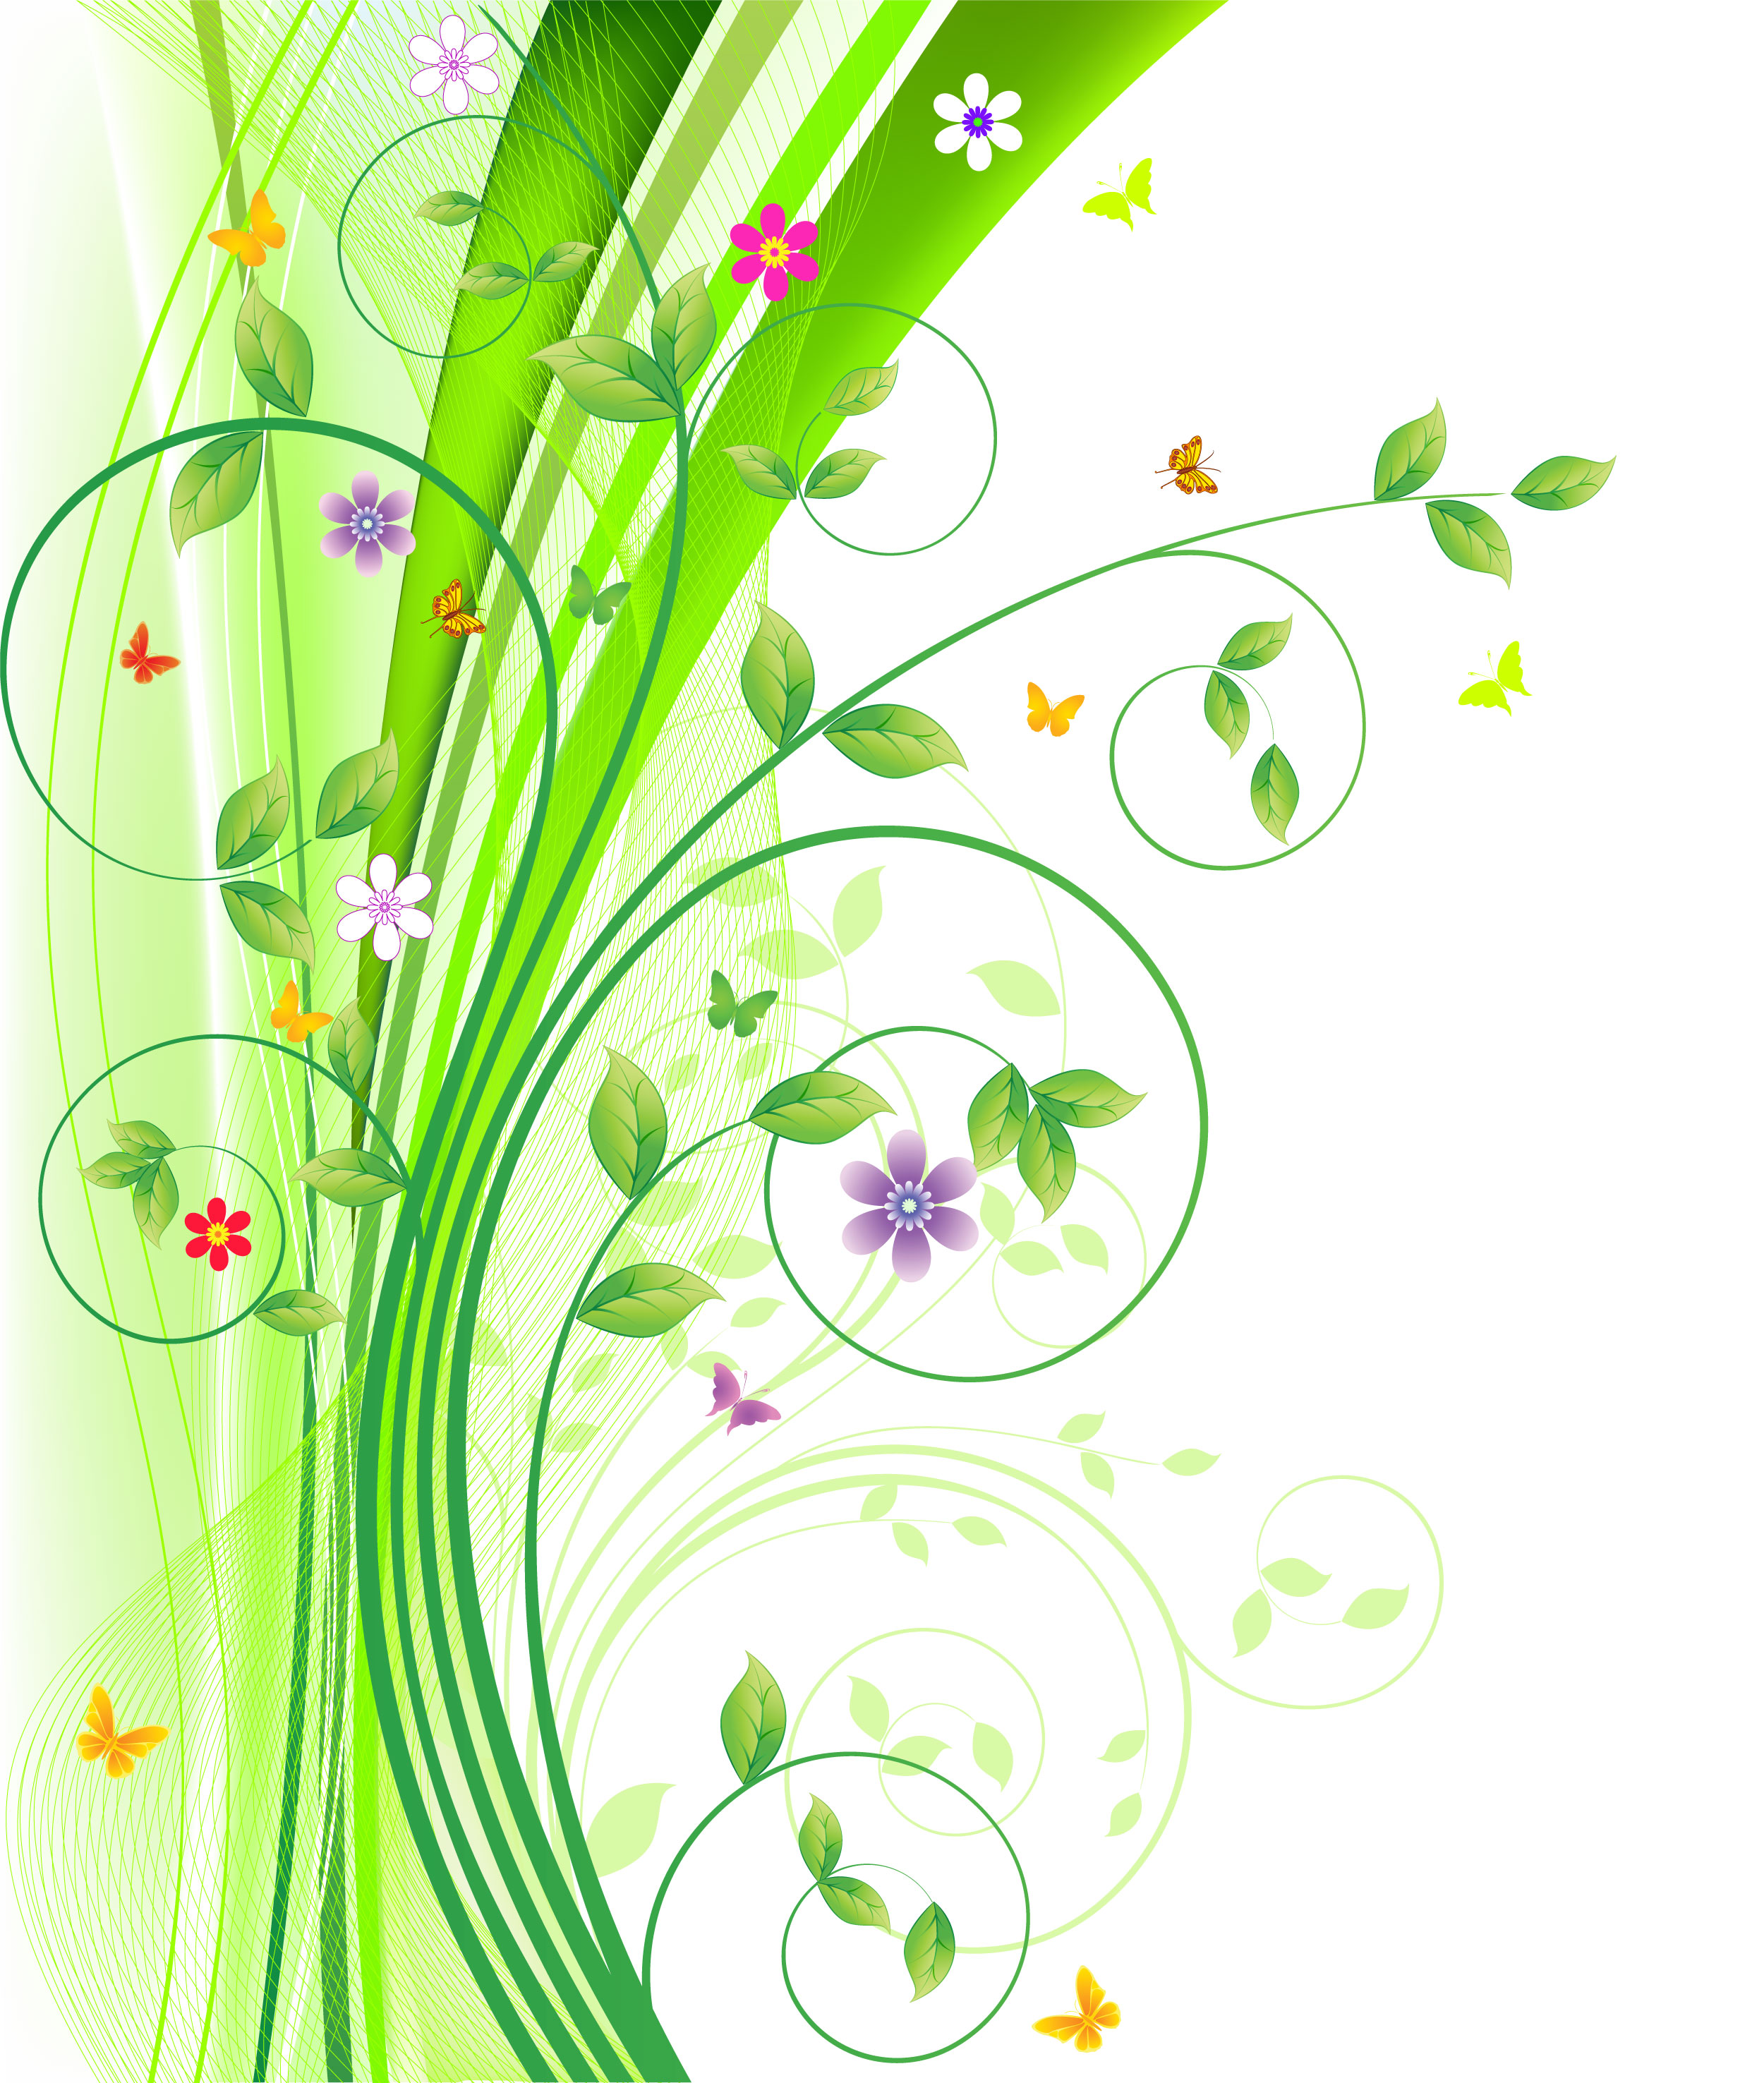 花のイラスト フリー素材 壁紙 背景no 729 黄緑ライン 茎葉 曲線